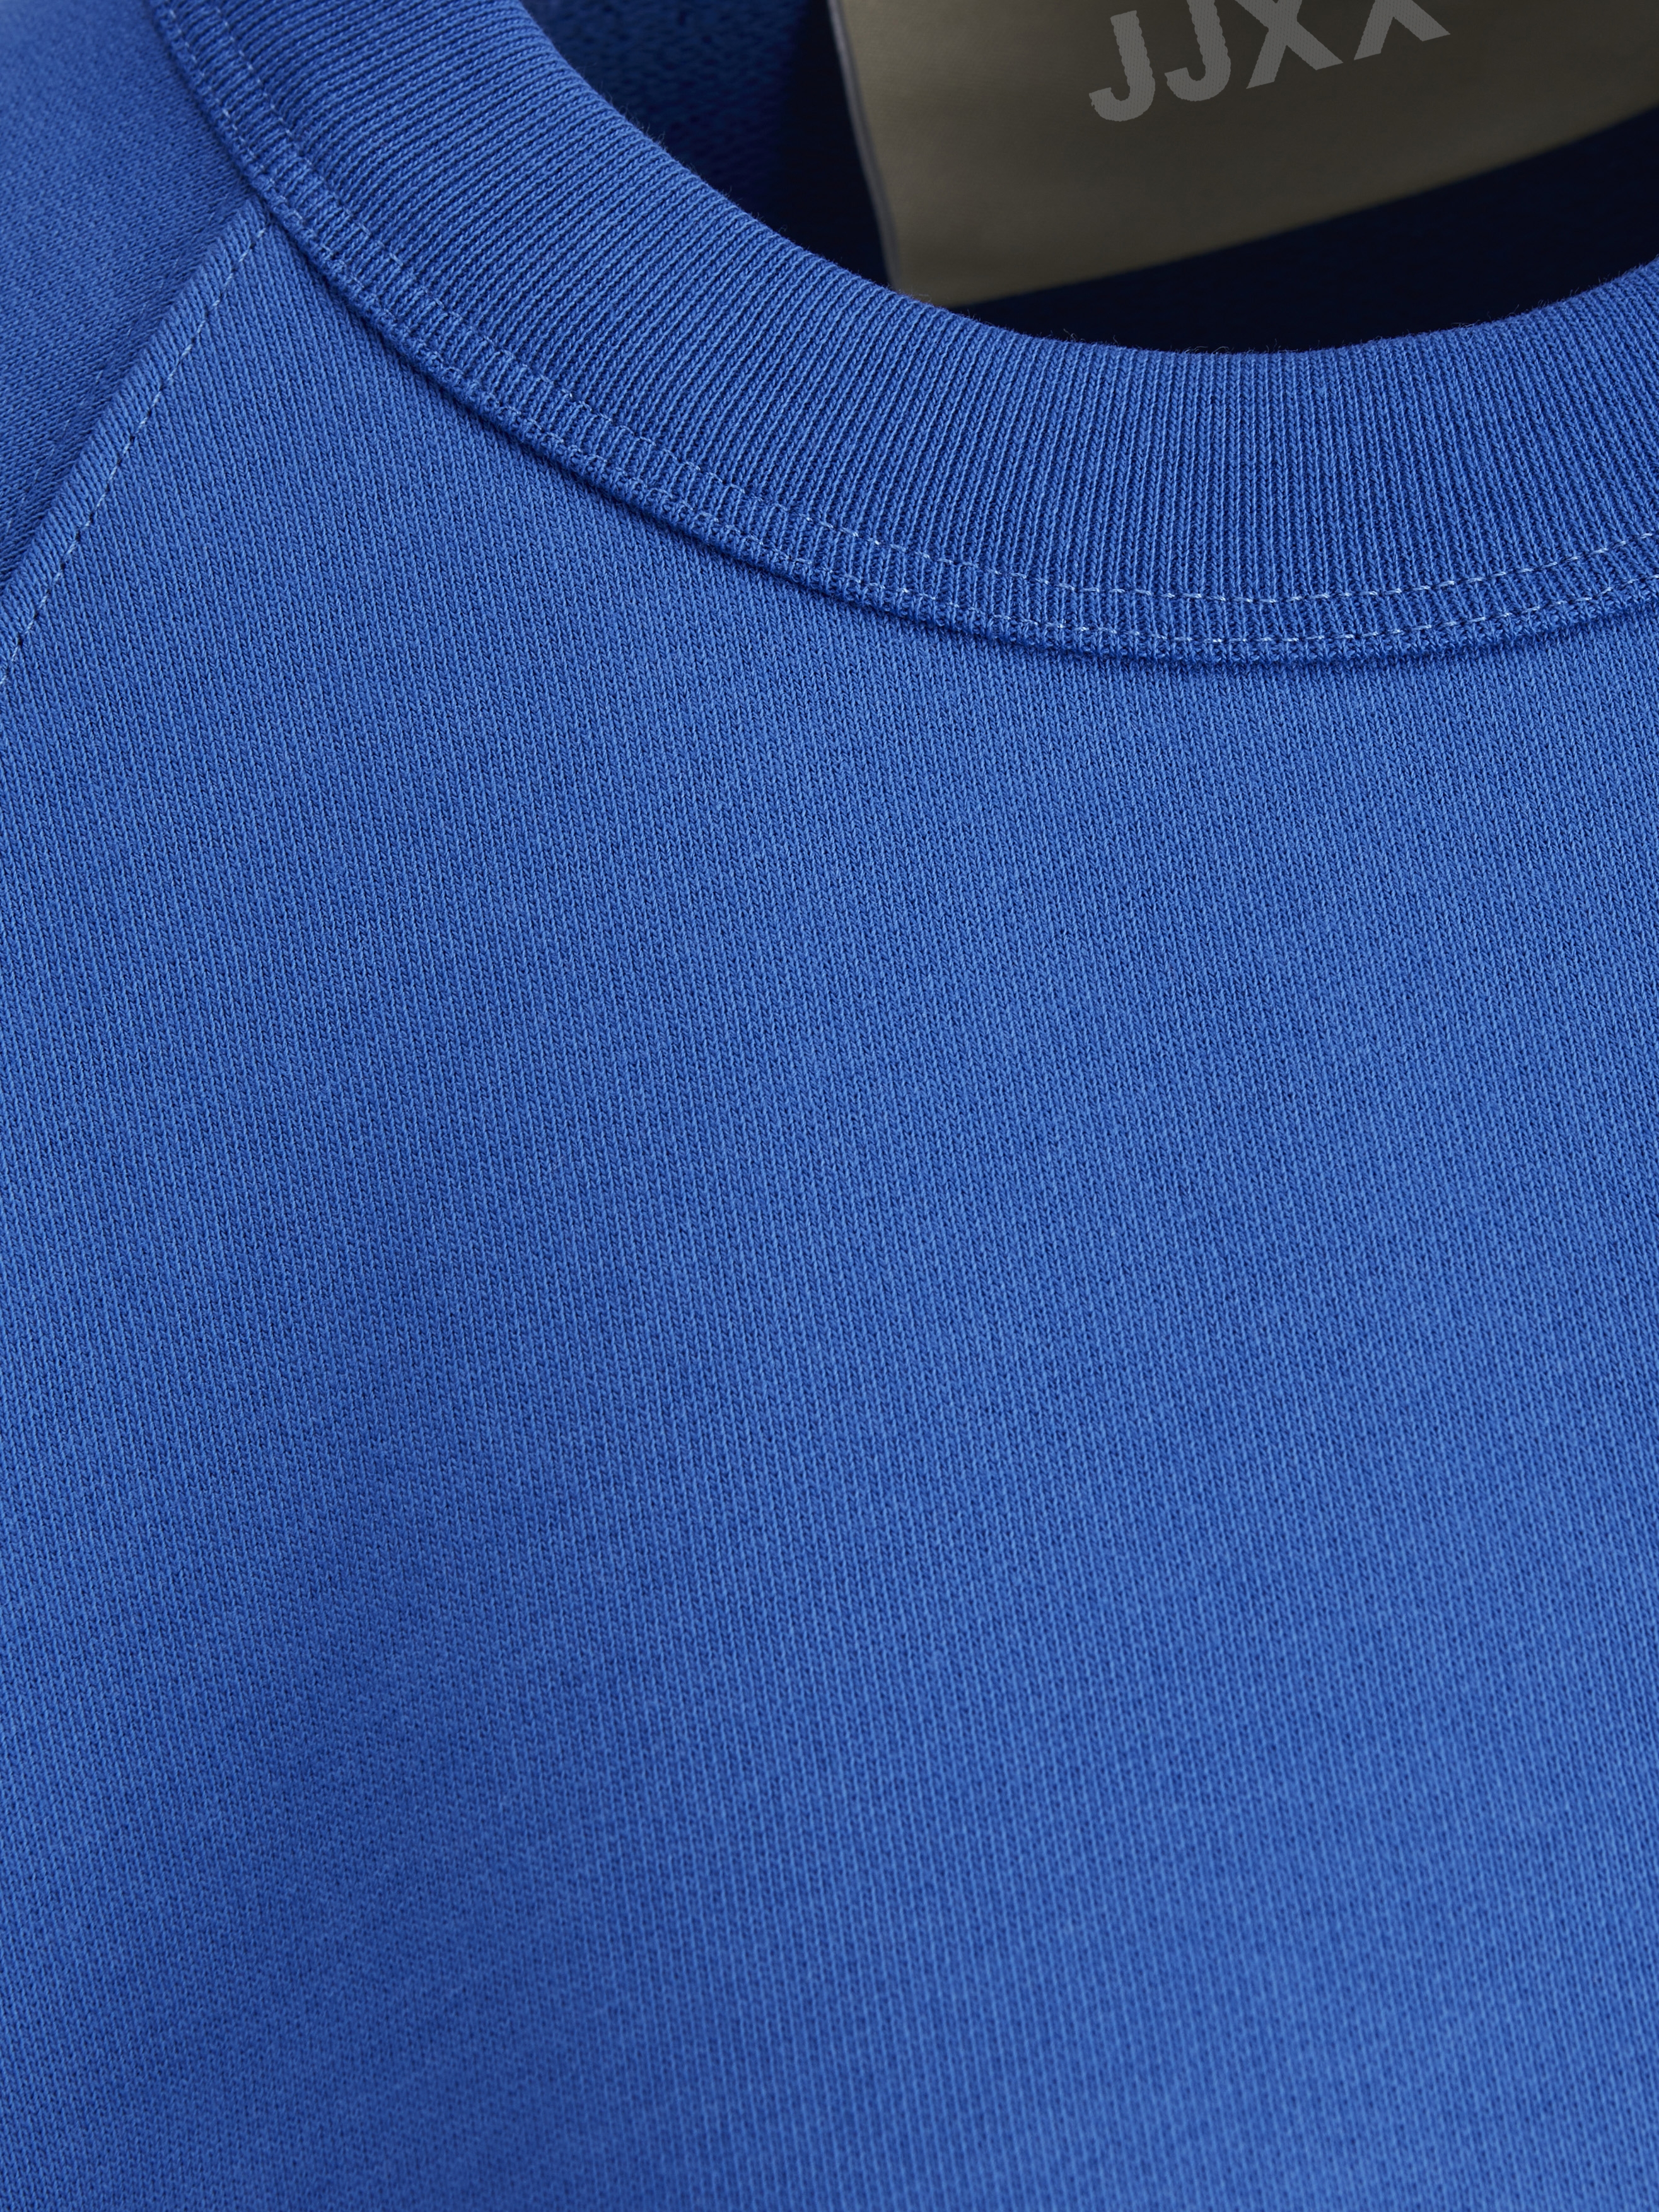 Bardziej zrównoważony Odzież JJXX Bluzka sportowa Caitlyn w kolorze Niebieskim 